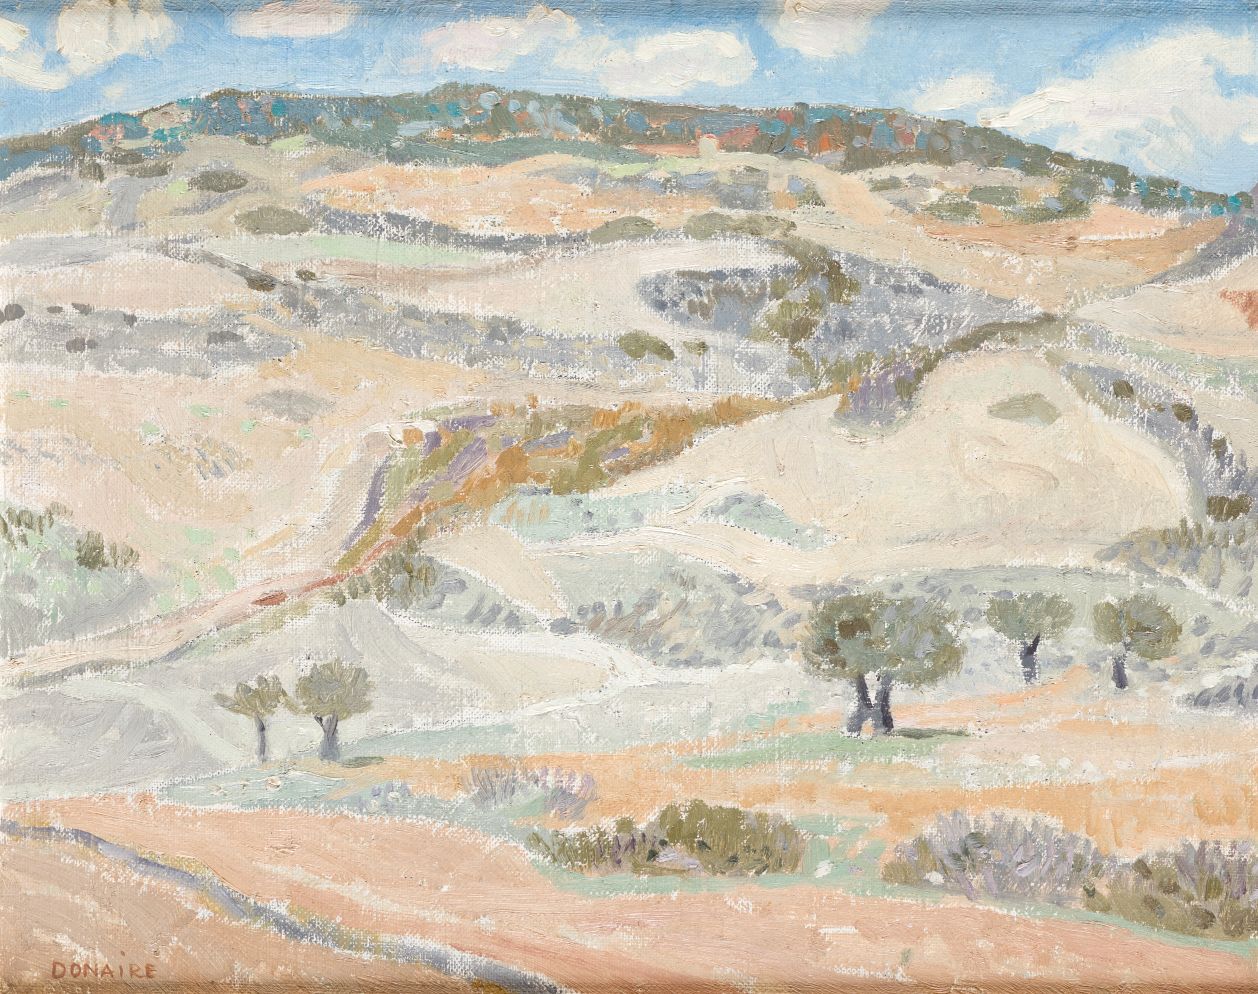 JOAQUÍN GARCÍA DONAIRE (1926 / 2003) "Hunting lands" 左下角有签名 布面油画板 32, 5 x 41 cm